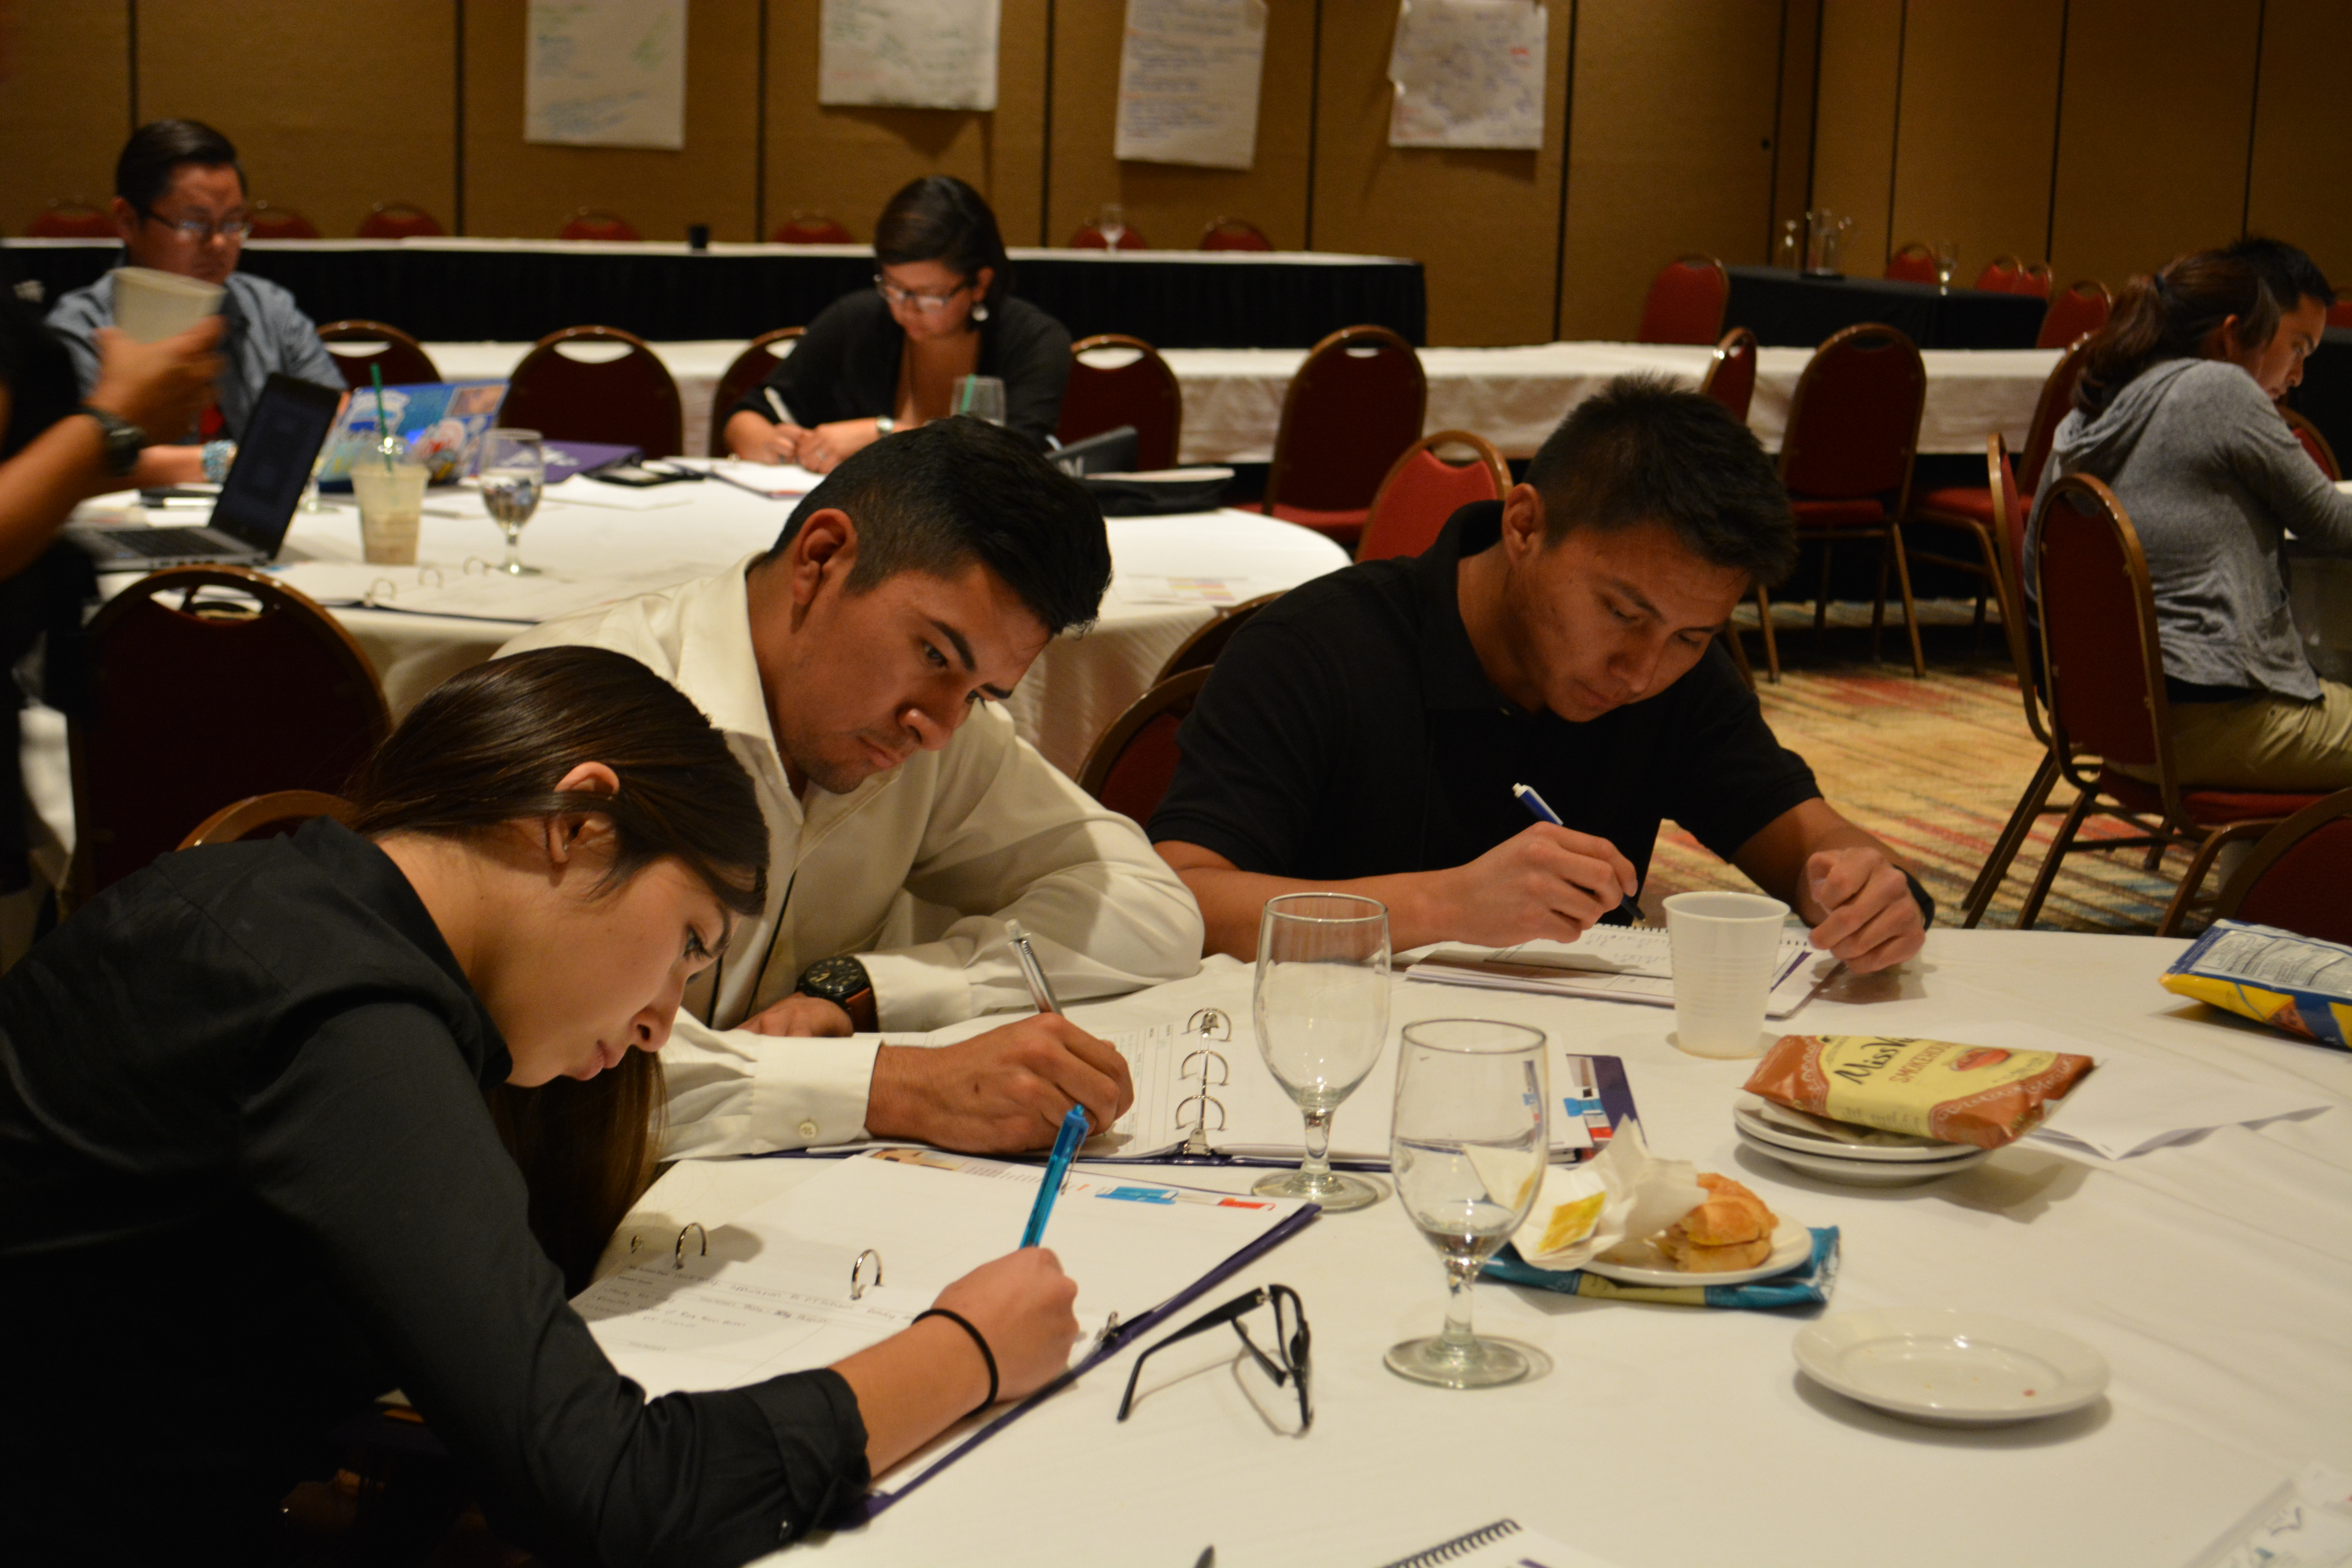 المشاركون يكتبون على الطاولات.